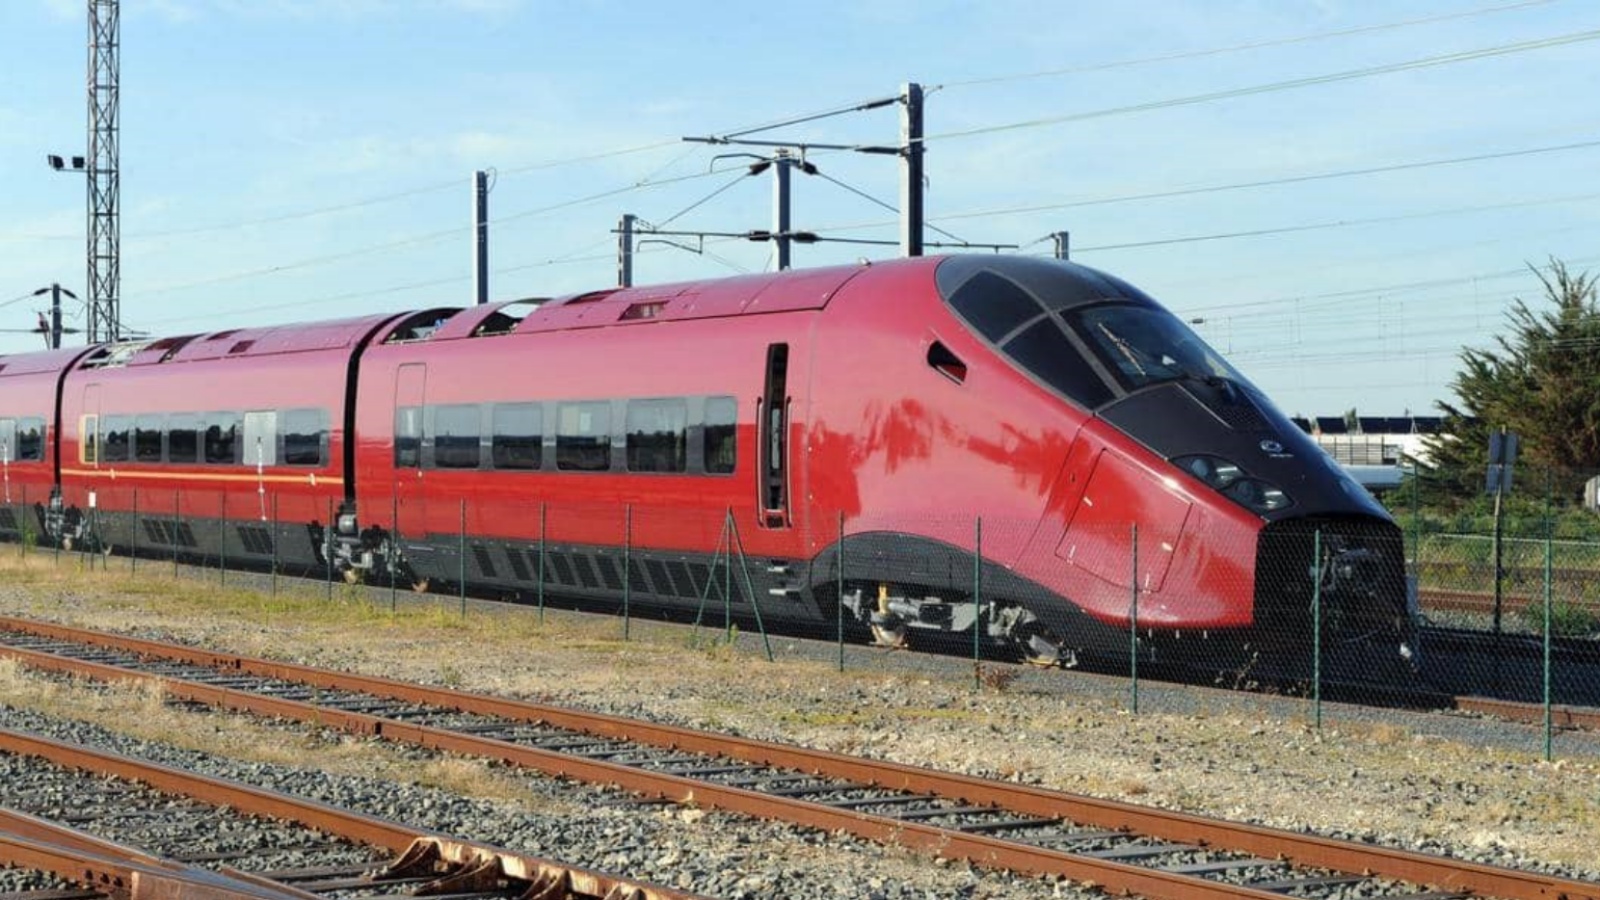 أحد القطارات الفائقة السرعة المعتمدة للتنقّل بين المدن الإيطالية.